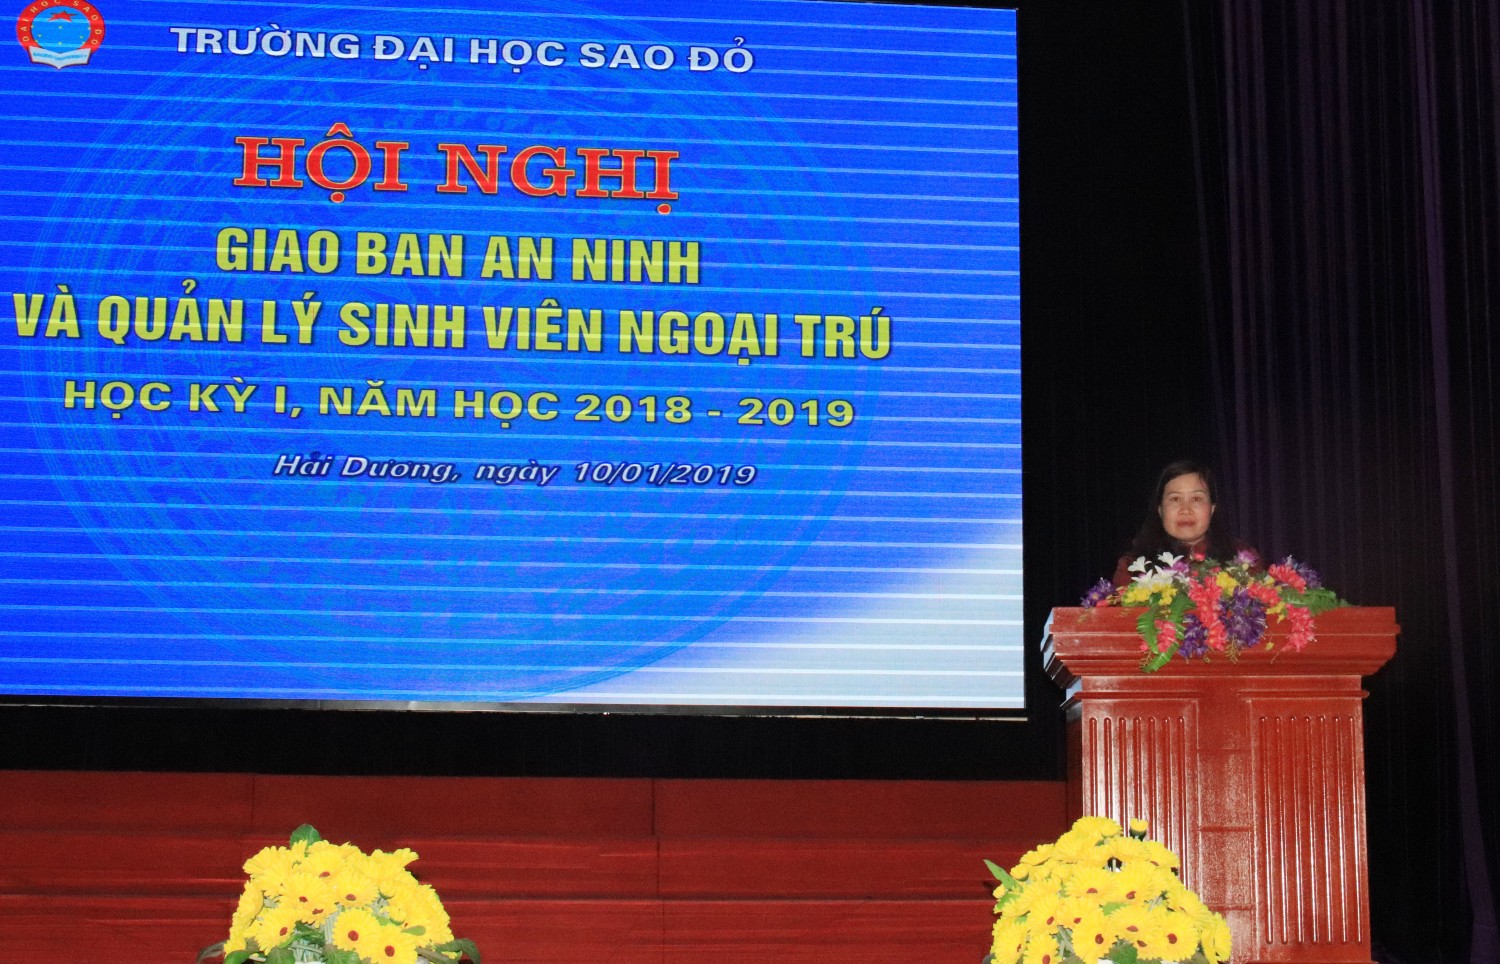 TS. Nguyễn Thị Kim Nguyên - Phó hiệu trưởng phát biểu khai mạc hội nghị